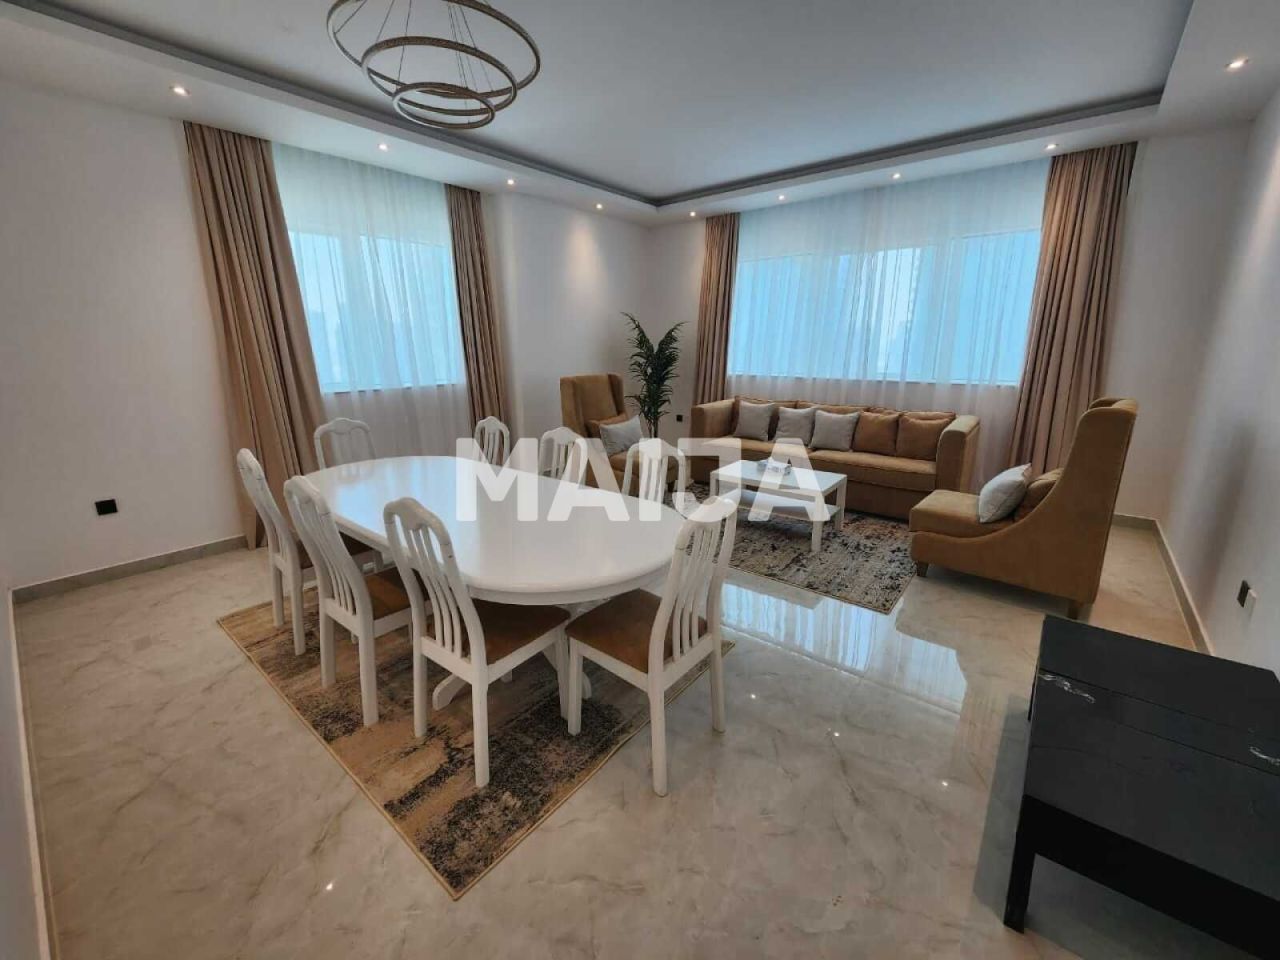 Apartment in Dubai, UAE, 110.19 sq.m - picture 1